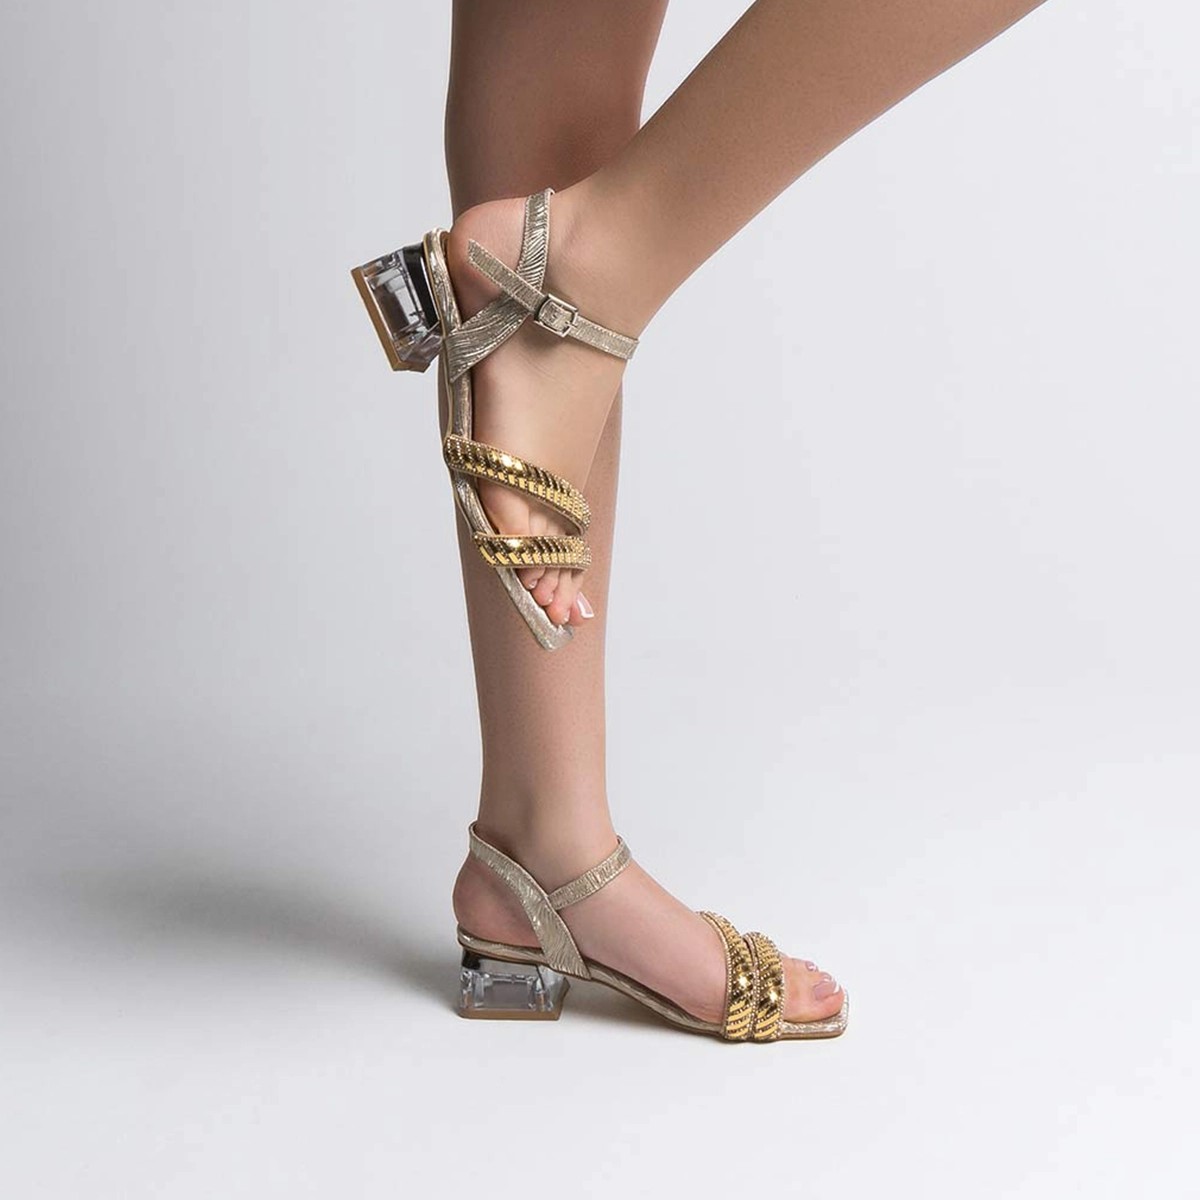 Tekstil Taşlı Kalın Kısa Topuklu Sandalet - Gold